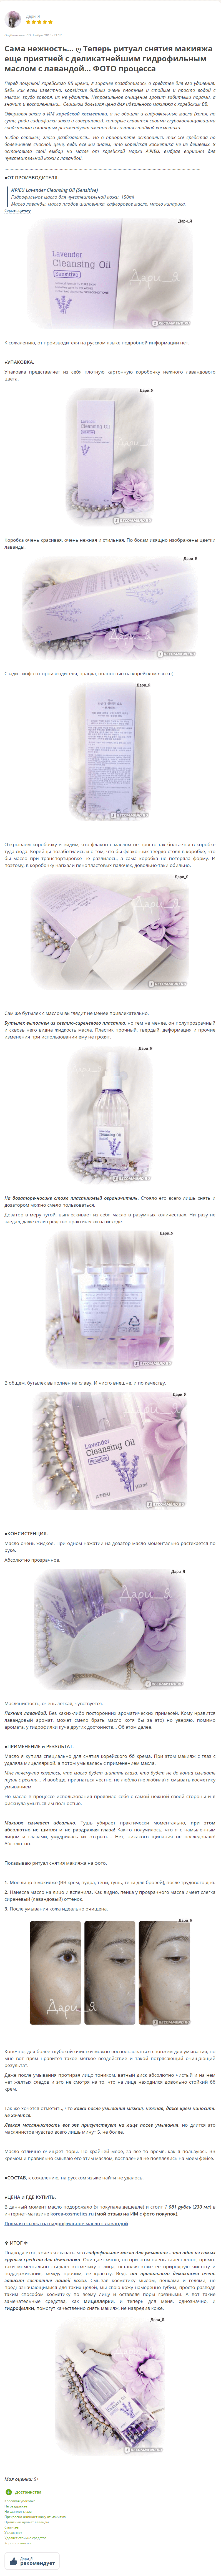 Lavender Cleansing Oil Sensitive [A'Pieu] 1